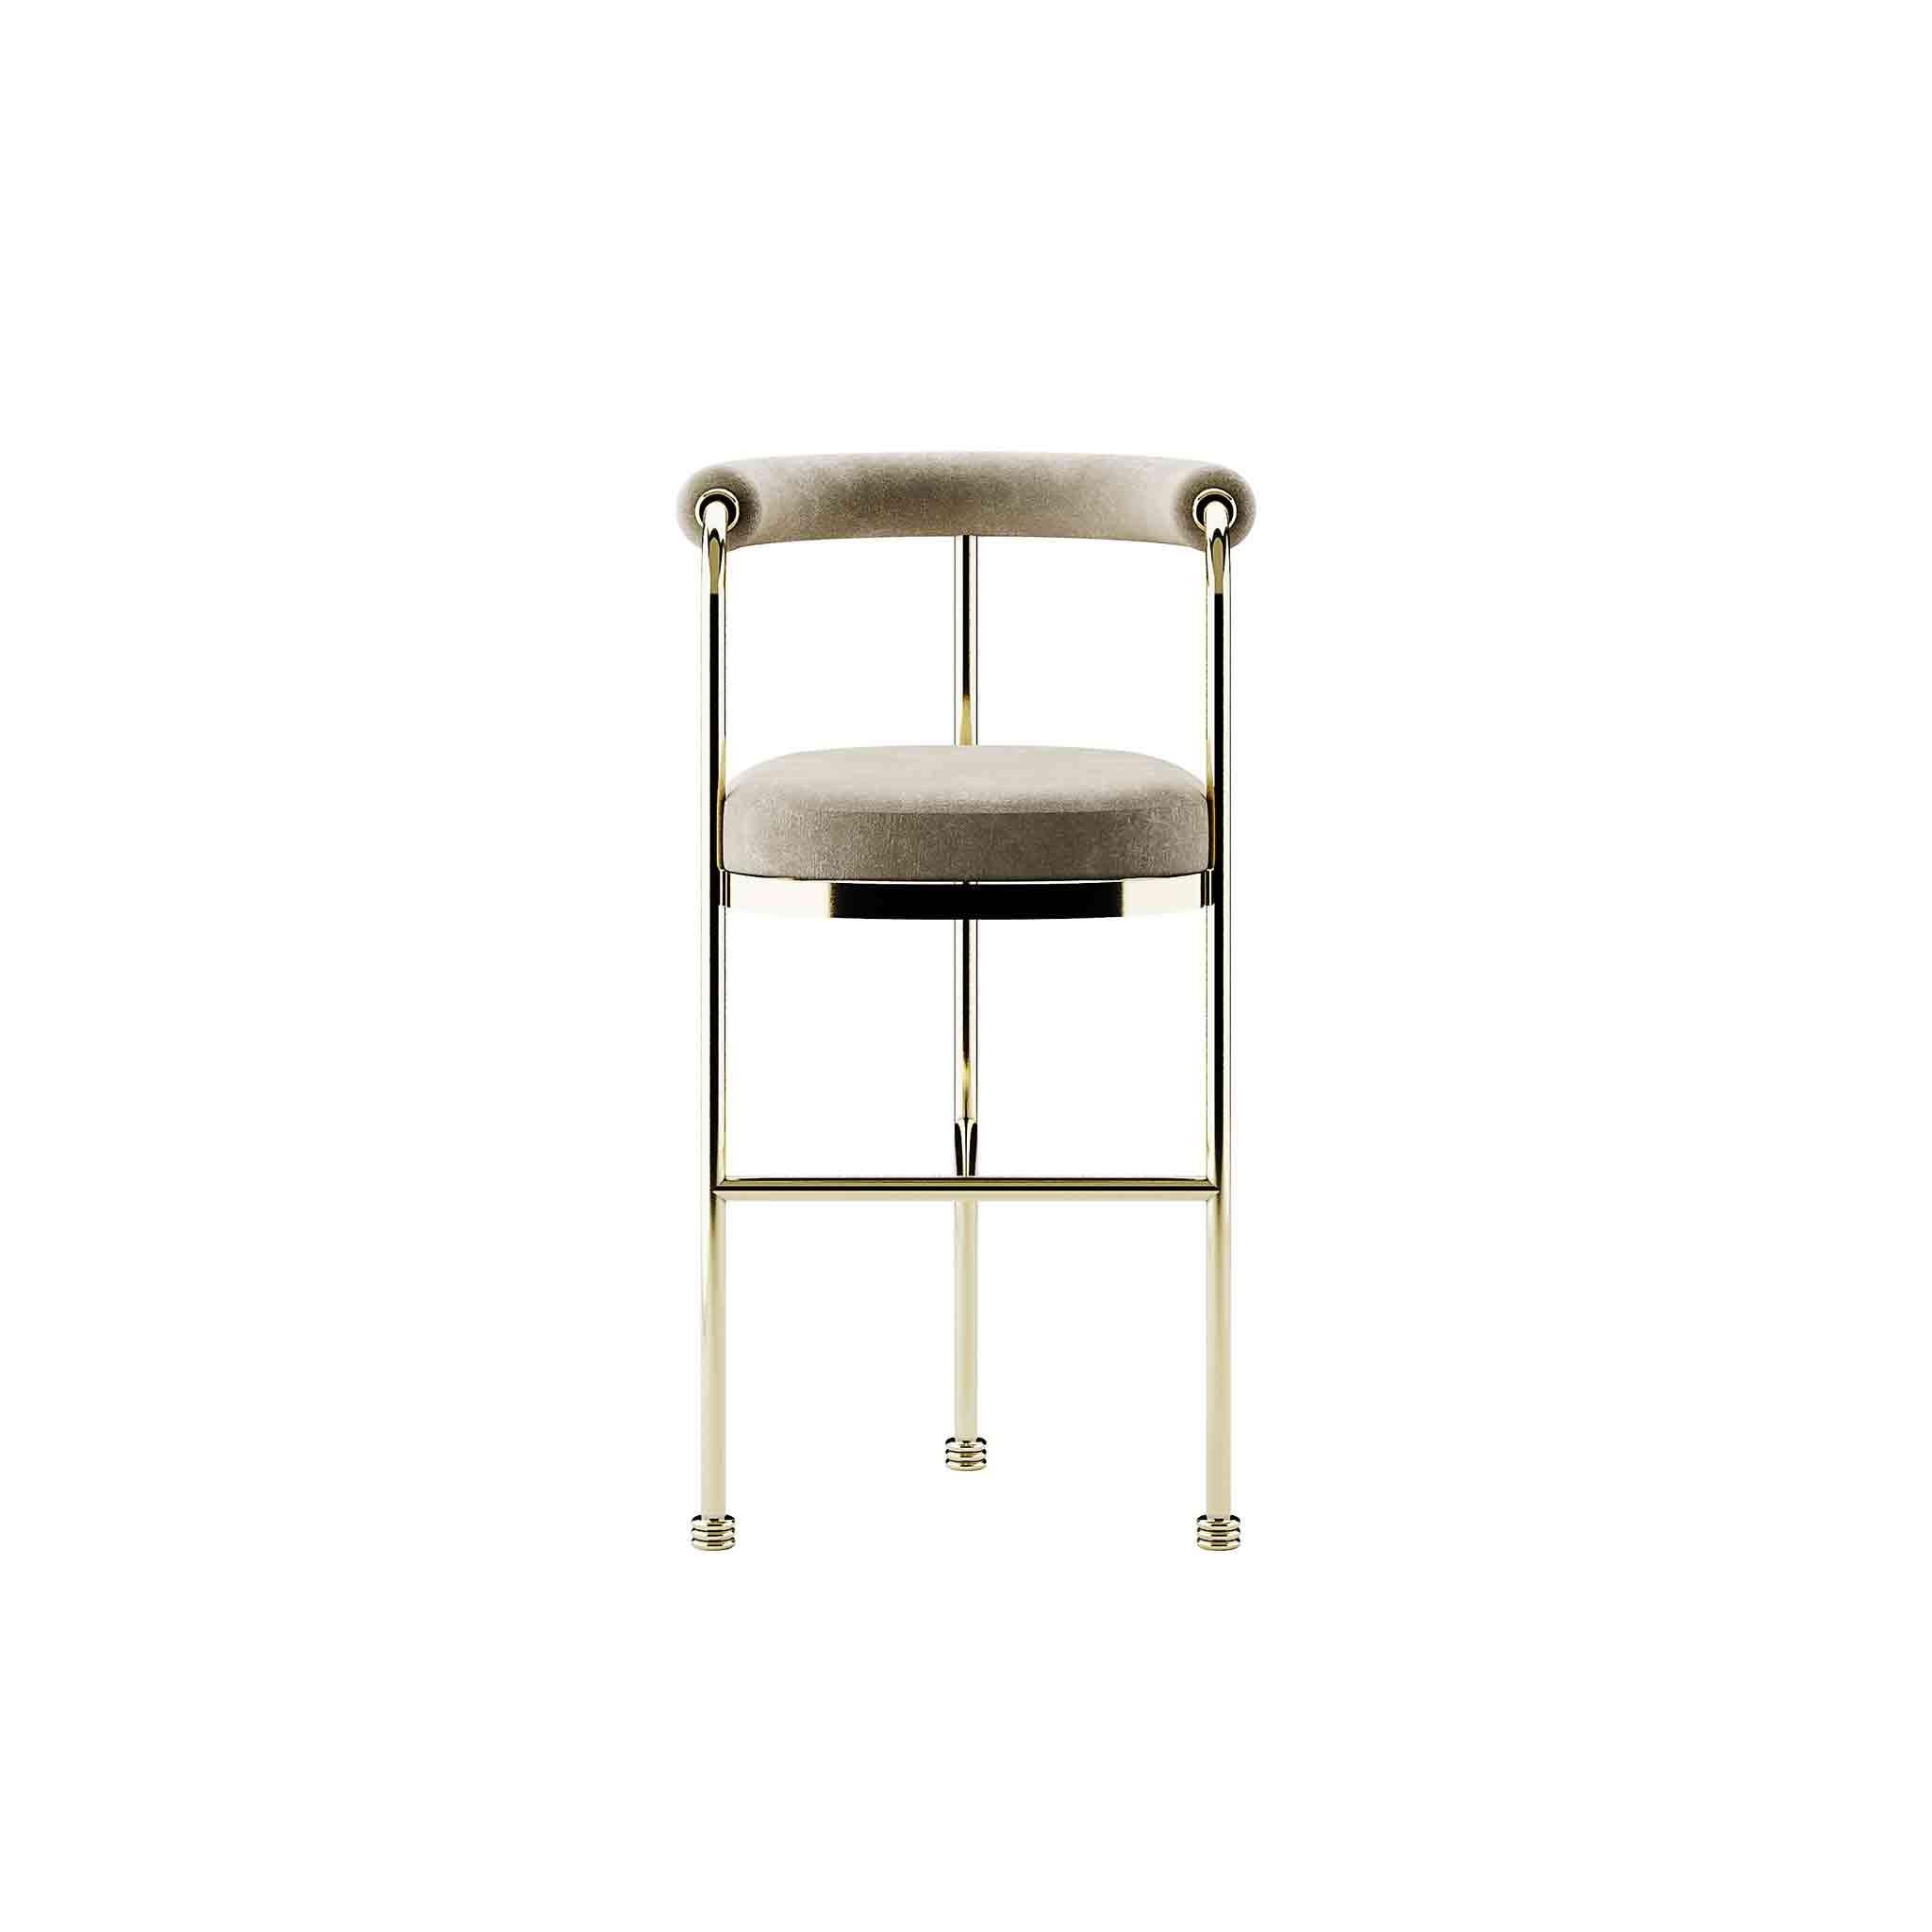 Limitierte Auflage: Art Deco Style Modern Velvet Bar Stuhl oder Counter Höhe mit goldenen Details

Joann Chair ist ein Barstuhl im Stil der Jahrhundertmitte. Sie wird jeden Raum aufwerten und Ihr nächstes Projekt im Gastgewerbe verbessern. Mit